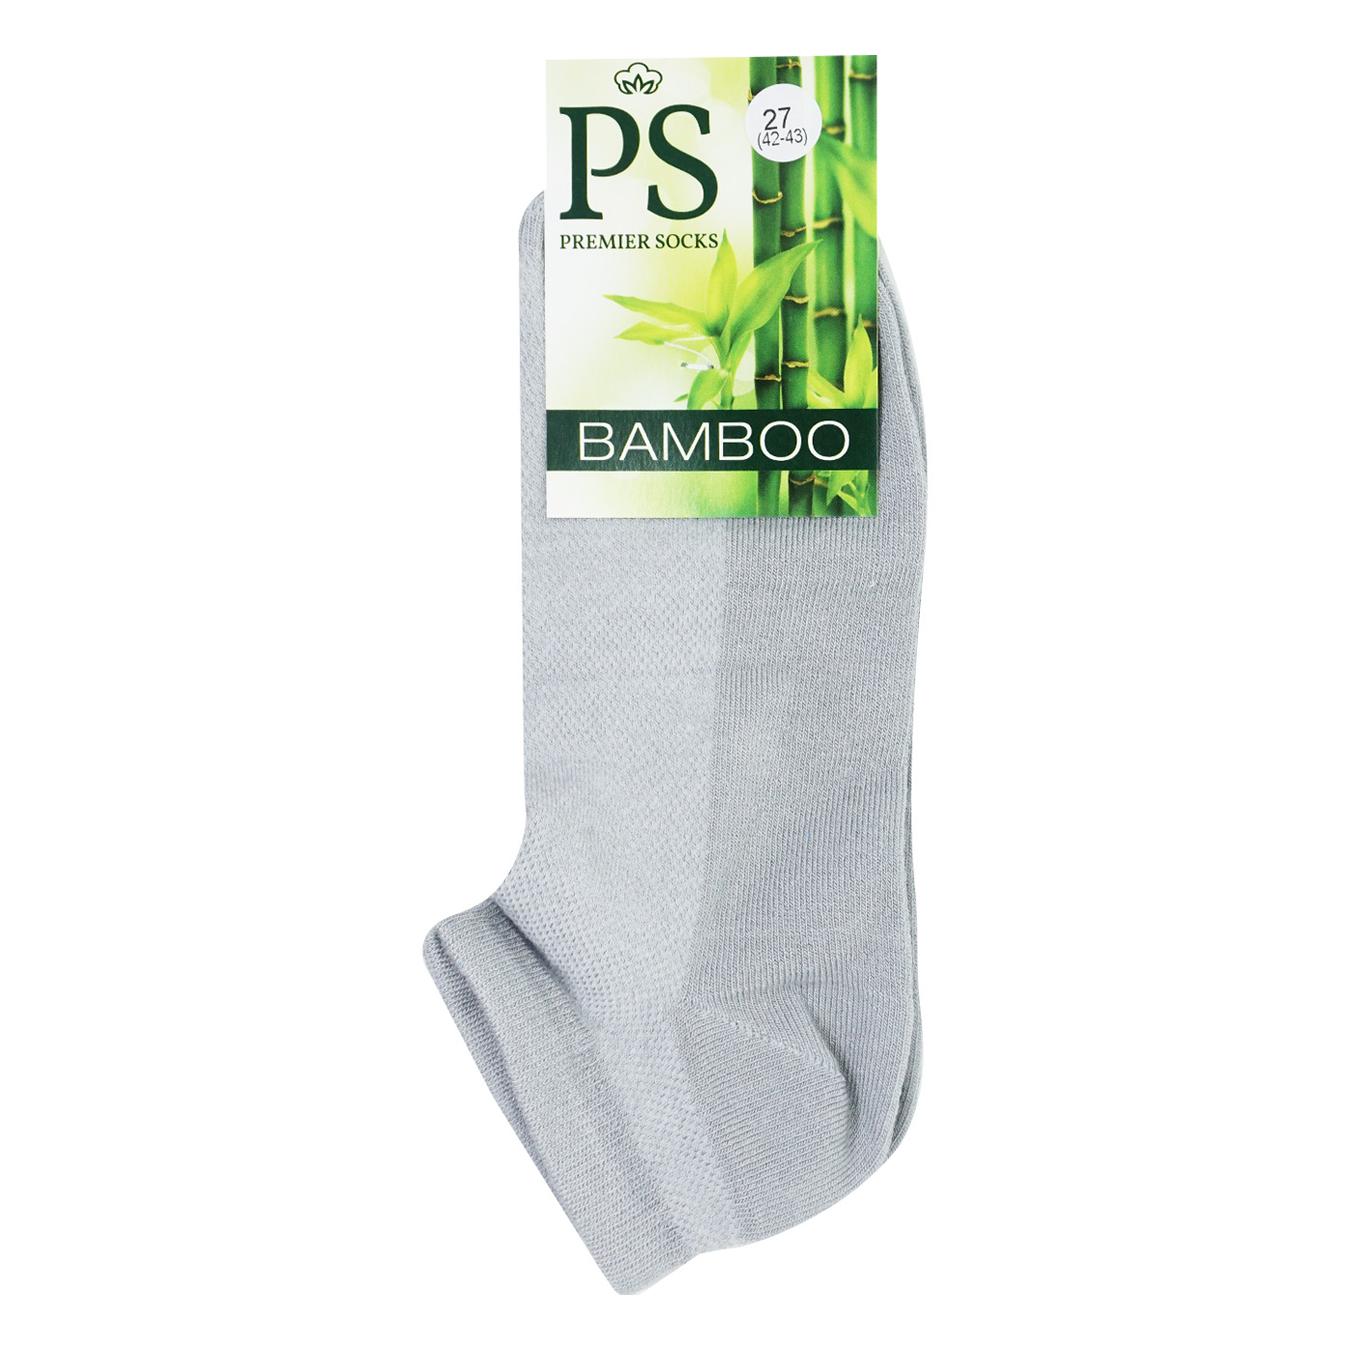 Men's socks Premier Socks Bamboo gray short summer mesh 27 years.